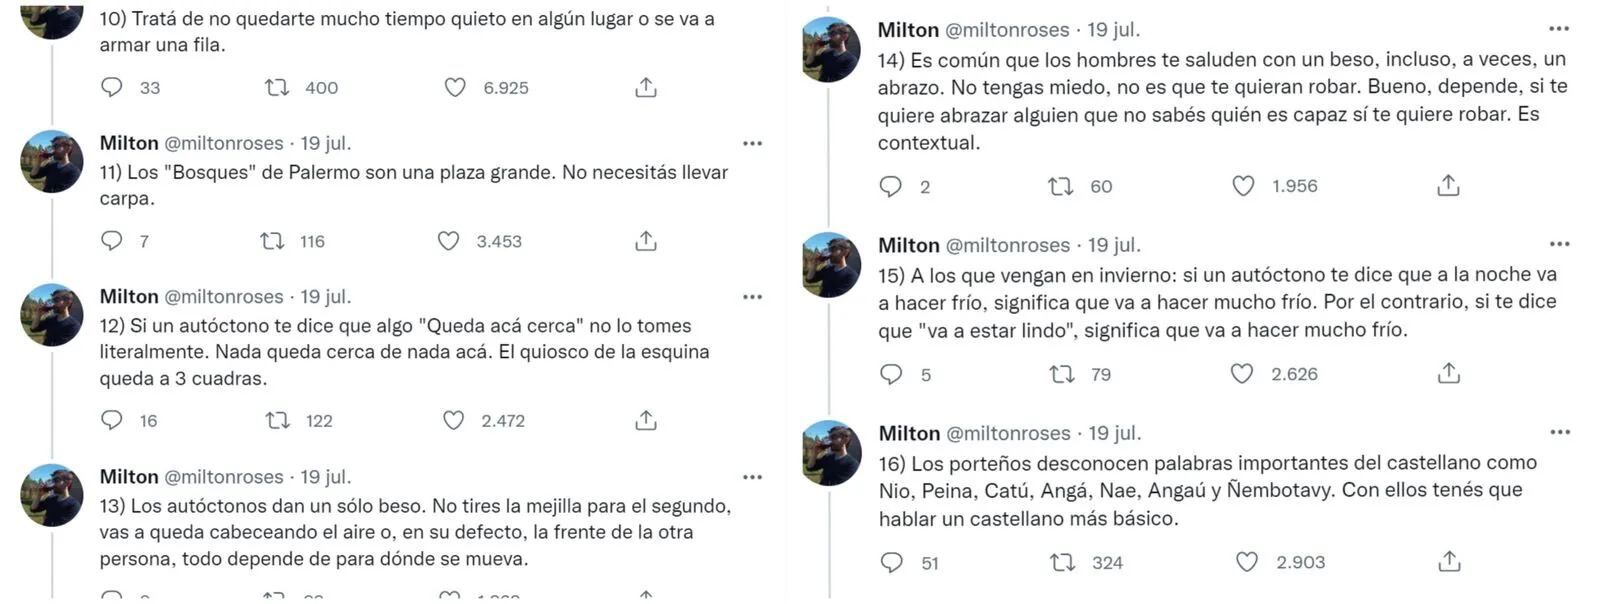 Milton, el creador del hilo de Twitter que advierte a los correntinos que viajan a Buenos Aires: “Me puse en el lugar del ingenuo, del que vive en el campo”